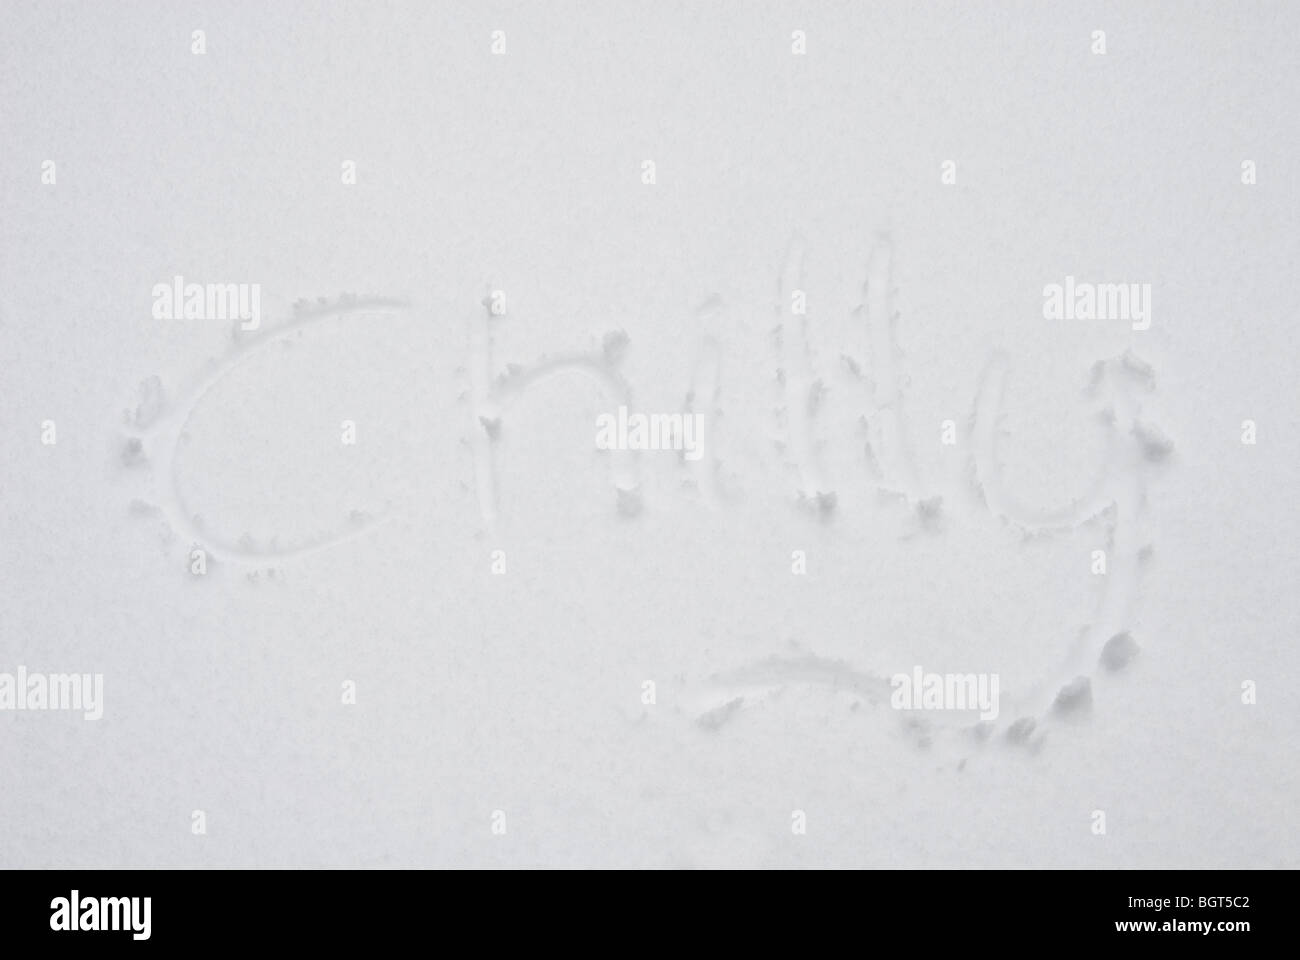 Das Wort "Chilly" geschrieben im Schnee Stockfoto